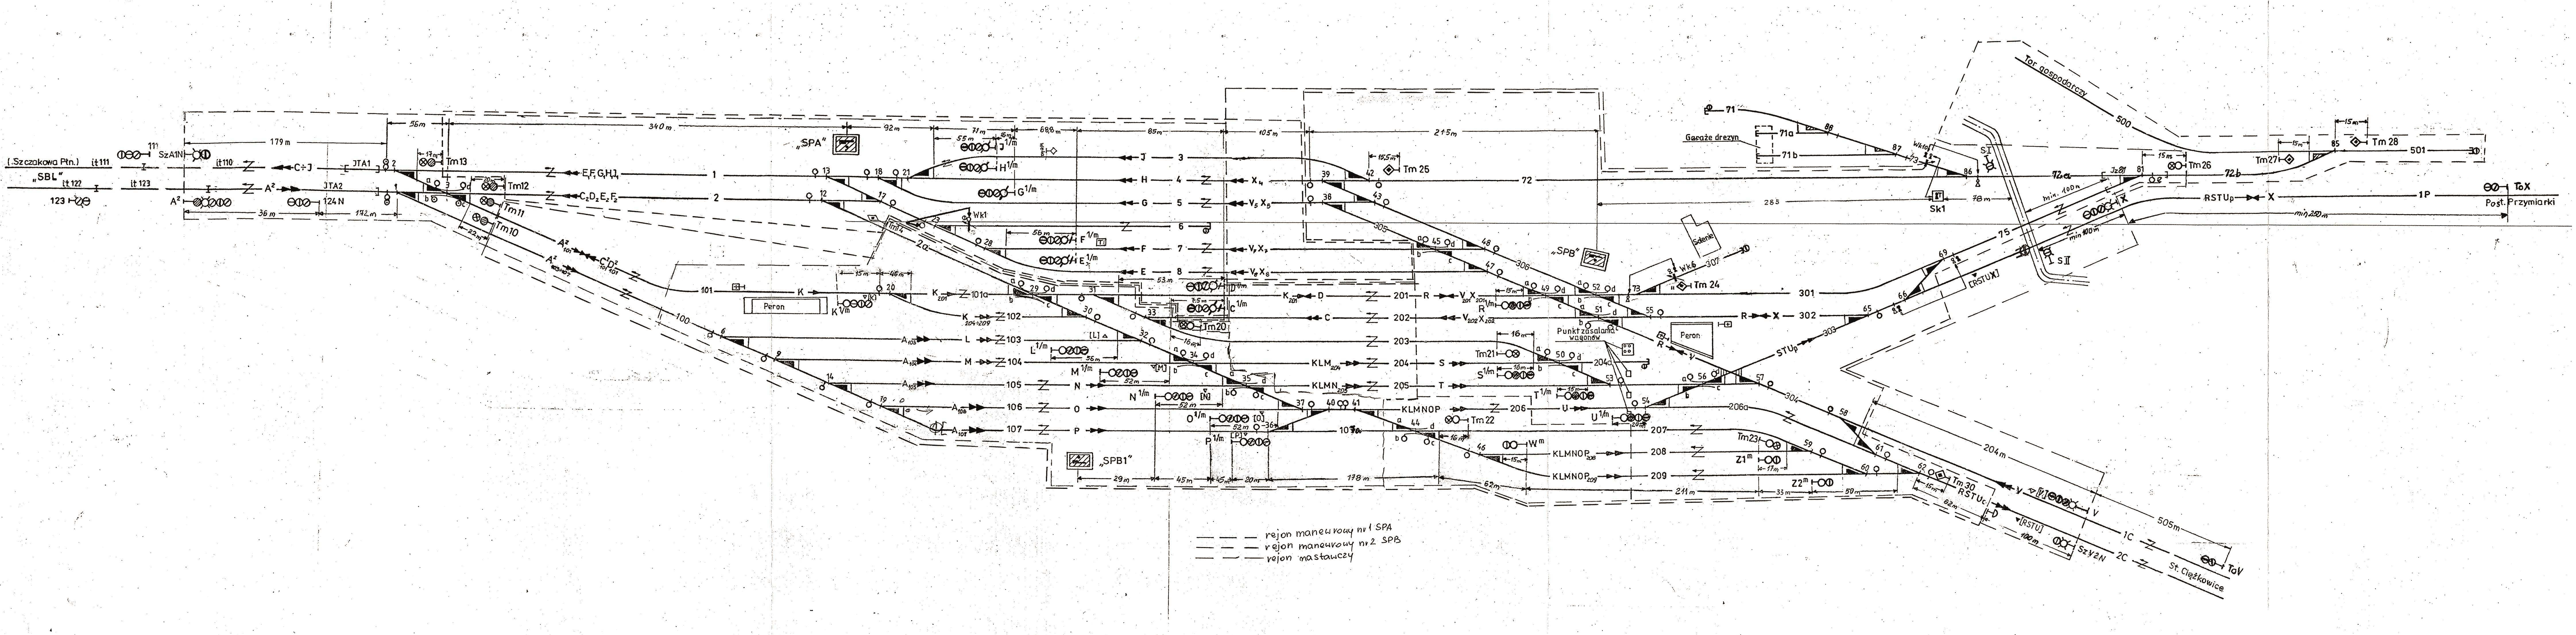 Plan schematyczny: SZCZAKOWA POŁUDNIE 1999 r.